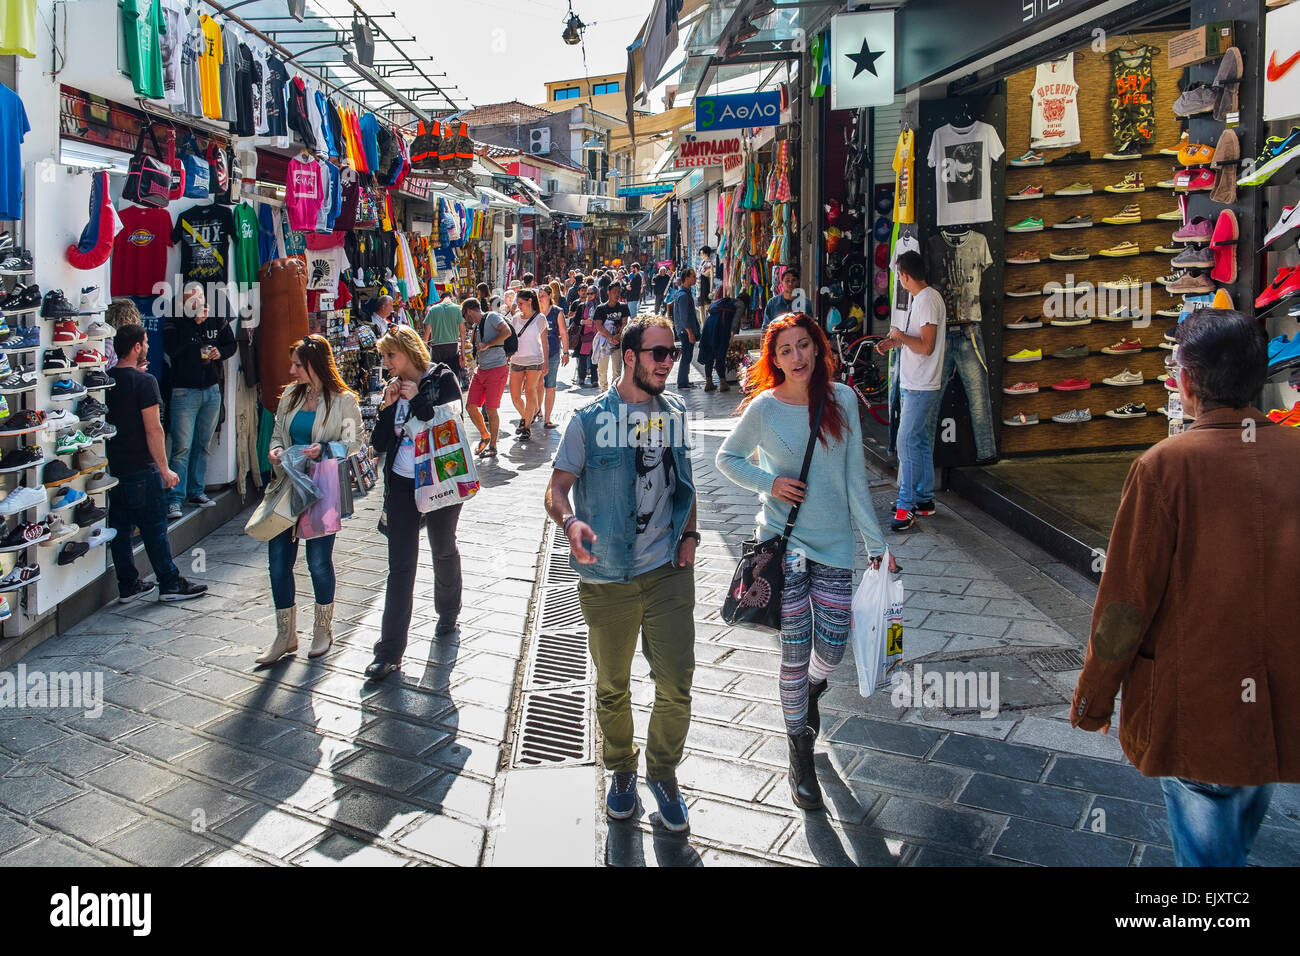 lässige Passanten beiläufig Surfen Einkaufsstraße bummeln Markt Souk Athen Griechenland Stockfoto